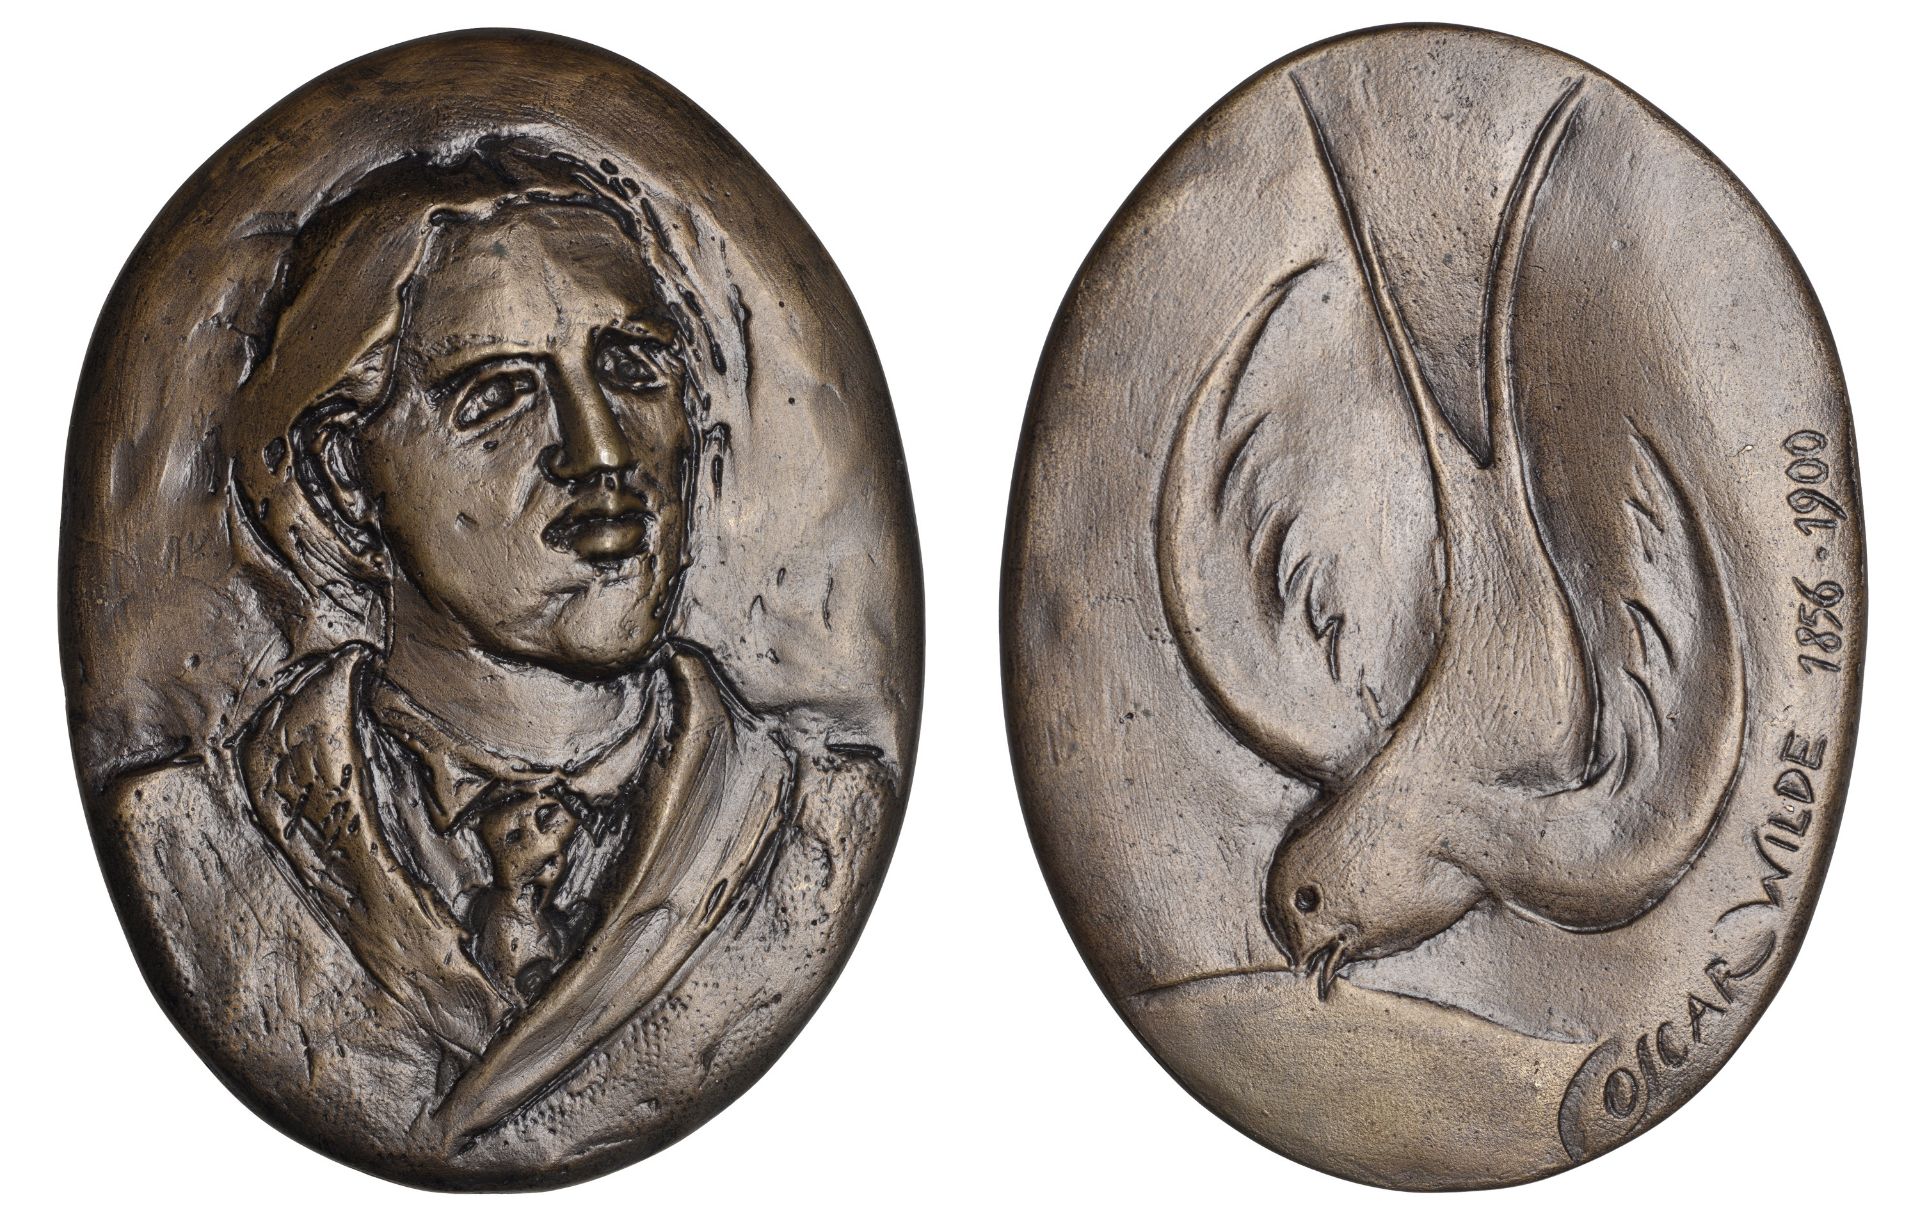 Oscar Wilde, 1989, an oval cast bronze medal by Danuta Solowiej-Wedderburn for BAMS, bust fa...